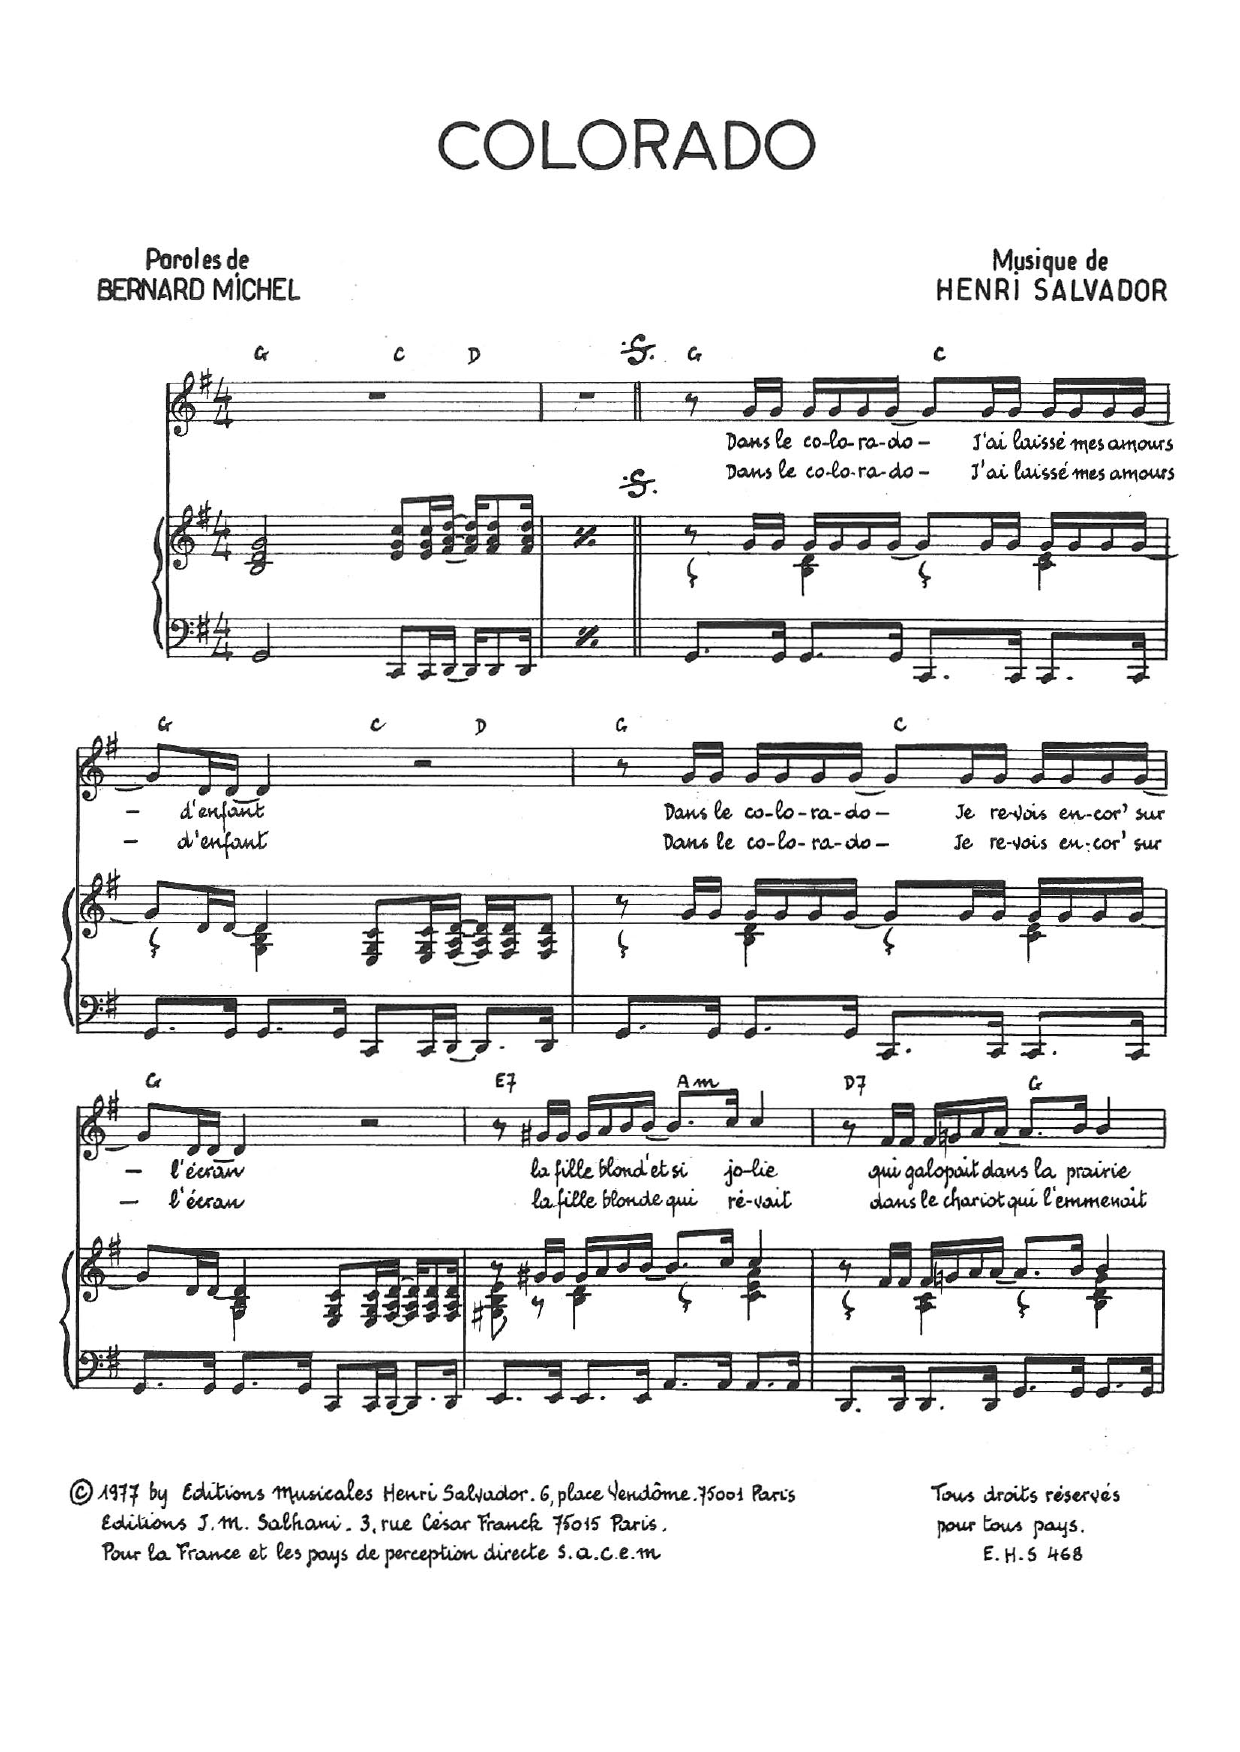 Henri Salvador Colorado sheet music notes and chords arranged for Piano & Vocal